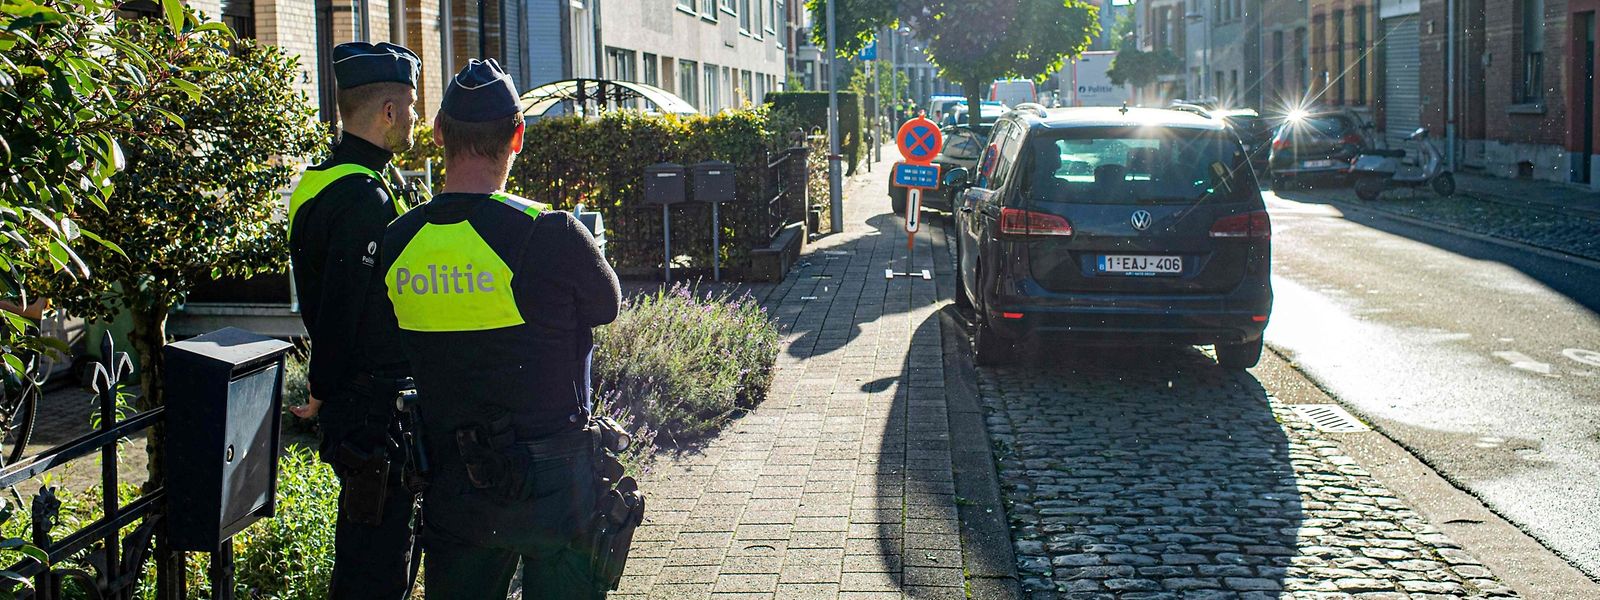 Agentes da polícia de guarda no local onde ocorreu uma troca de tiros fatal esta manhã, em Merksem, Antuérpia. 